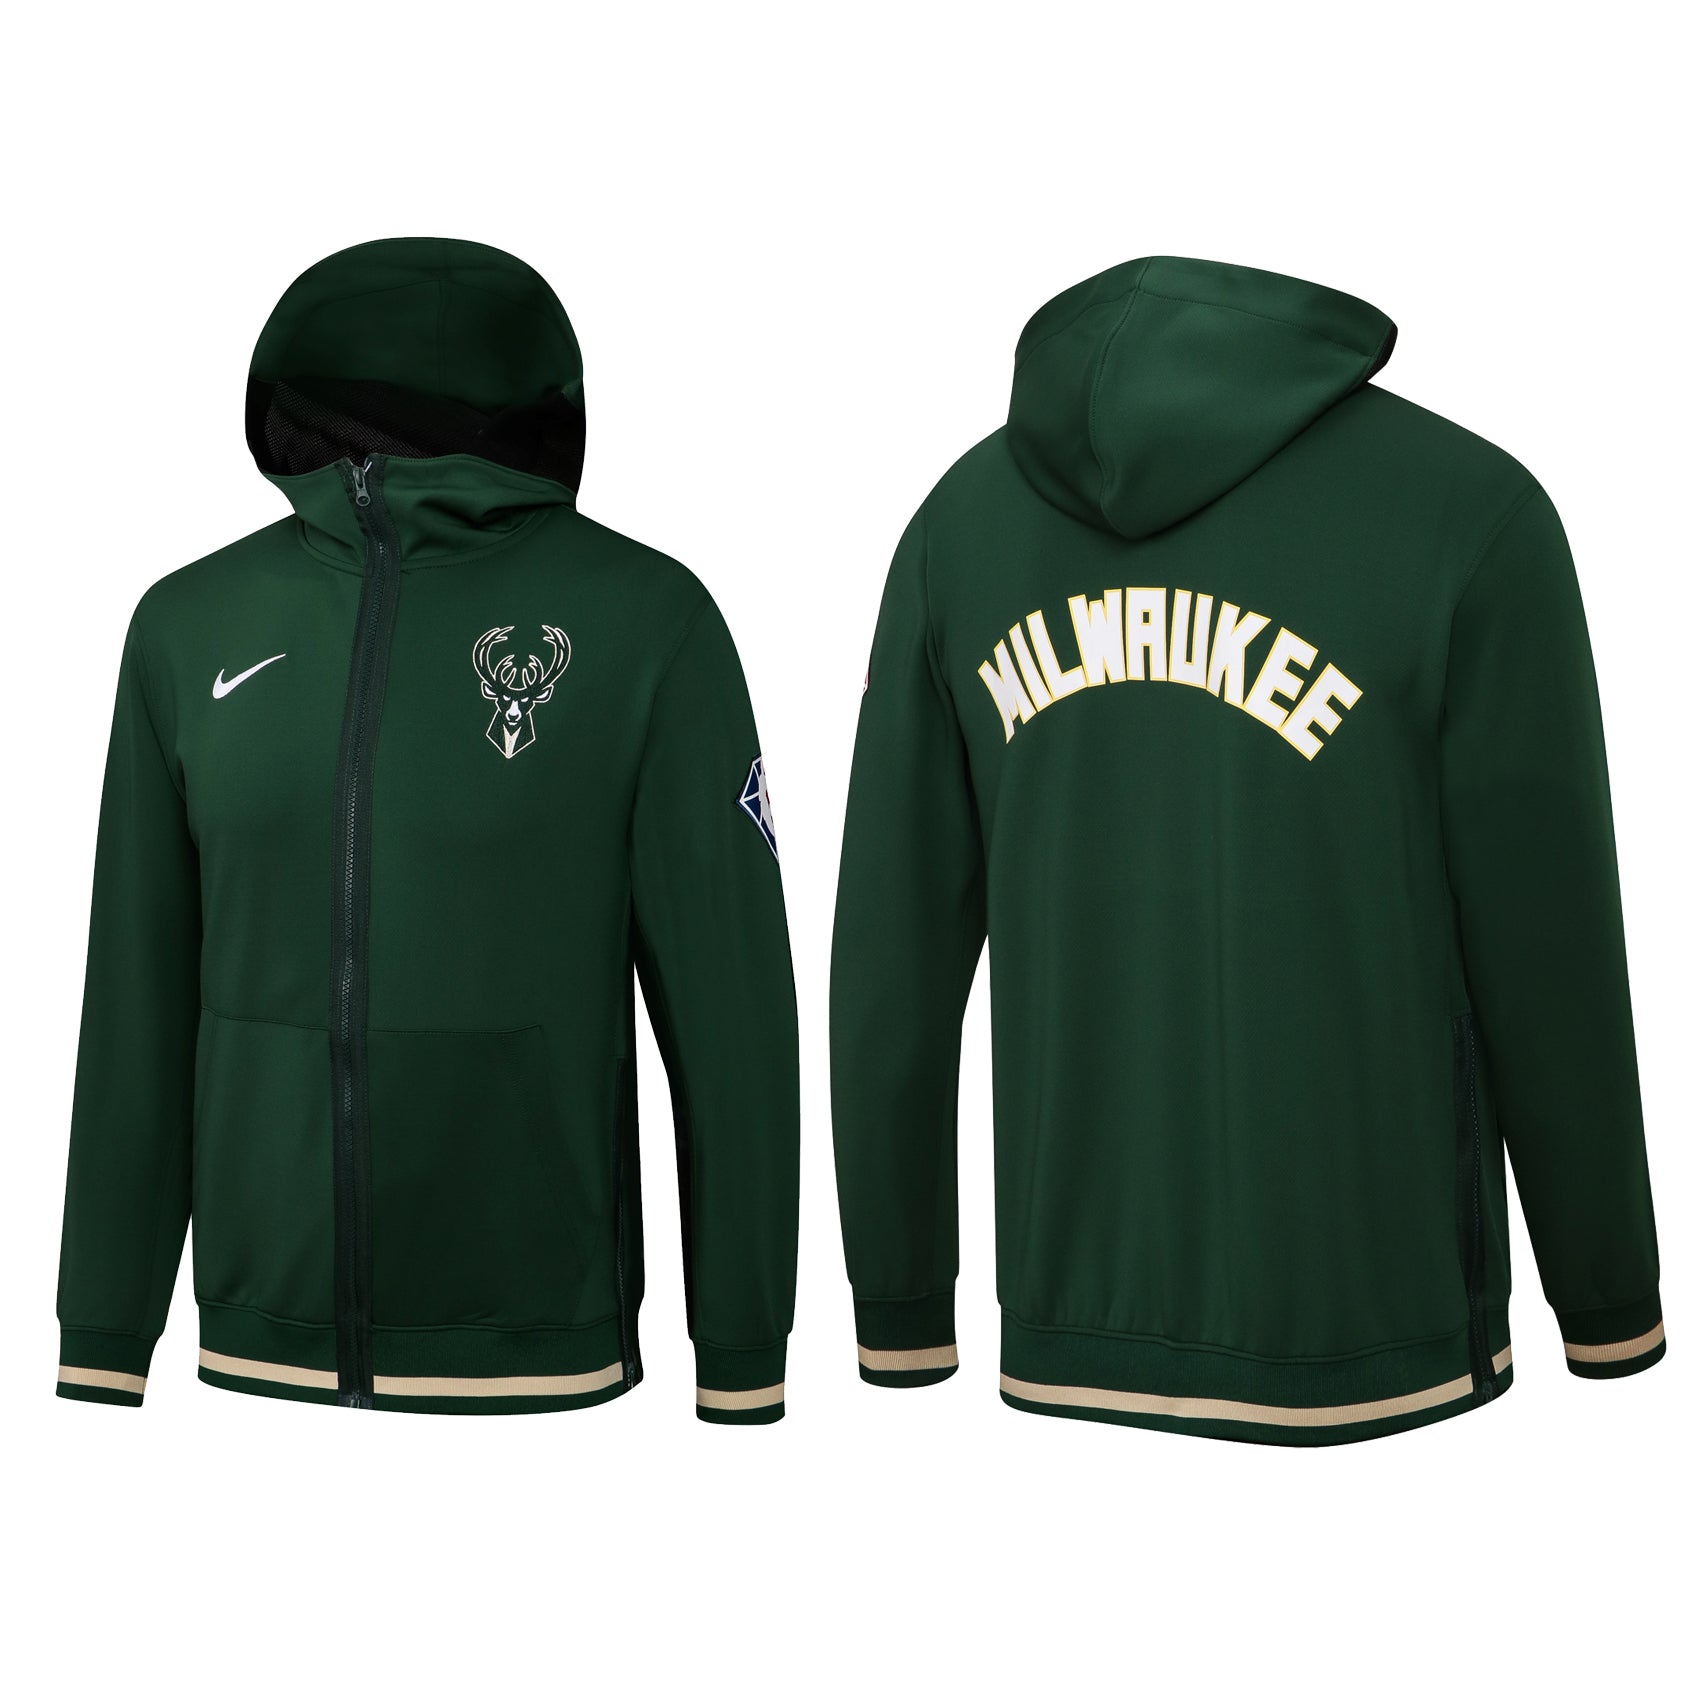 Milwaukee green jacket